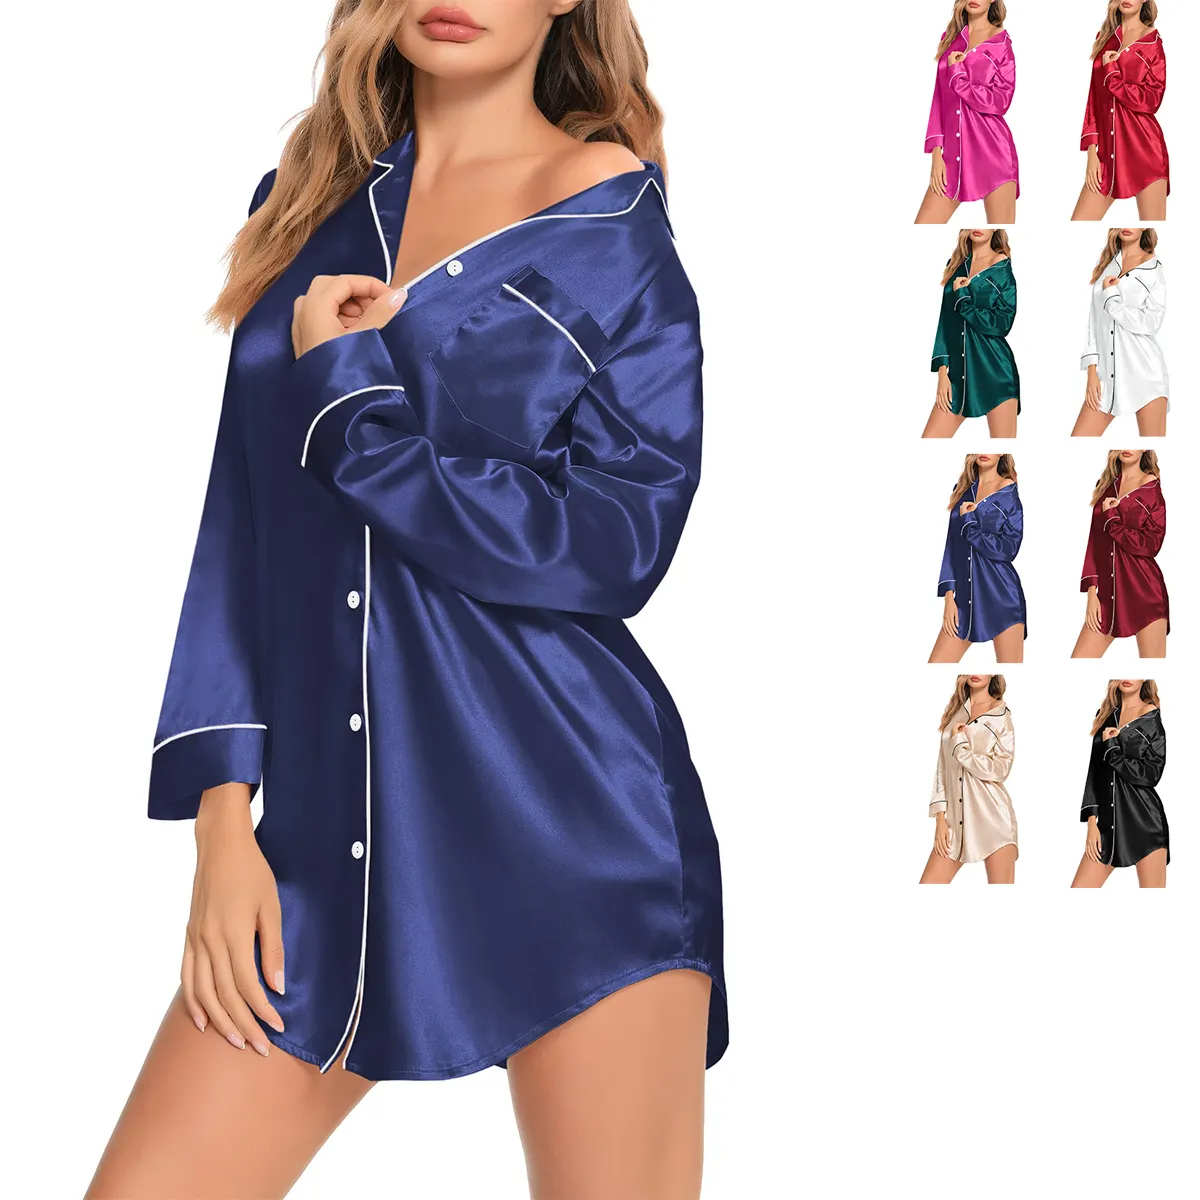 Üretici toptan kadın ipek saten bambu pamuk pijama Nightshirt düğme kadınlar için gece elbiseleri Pijamas pijama gömlek